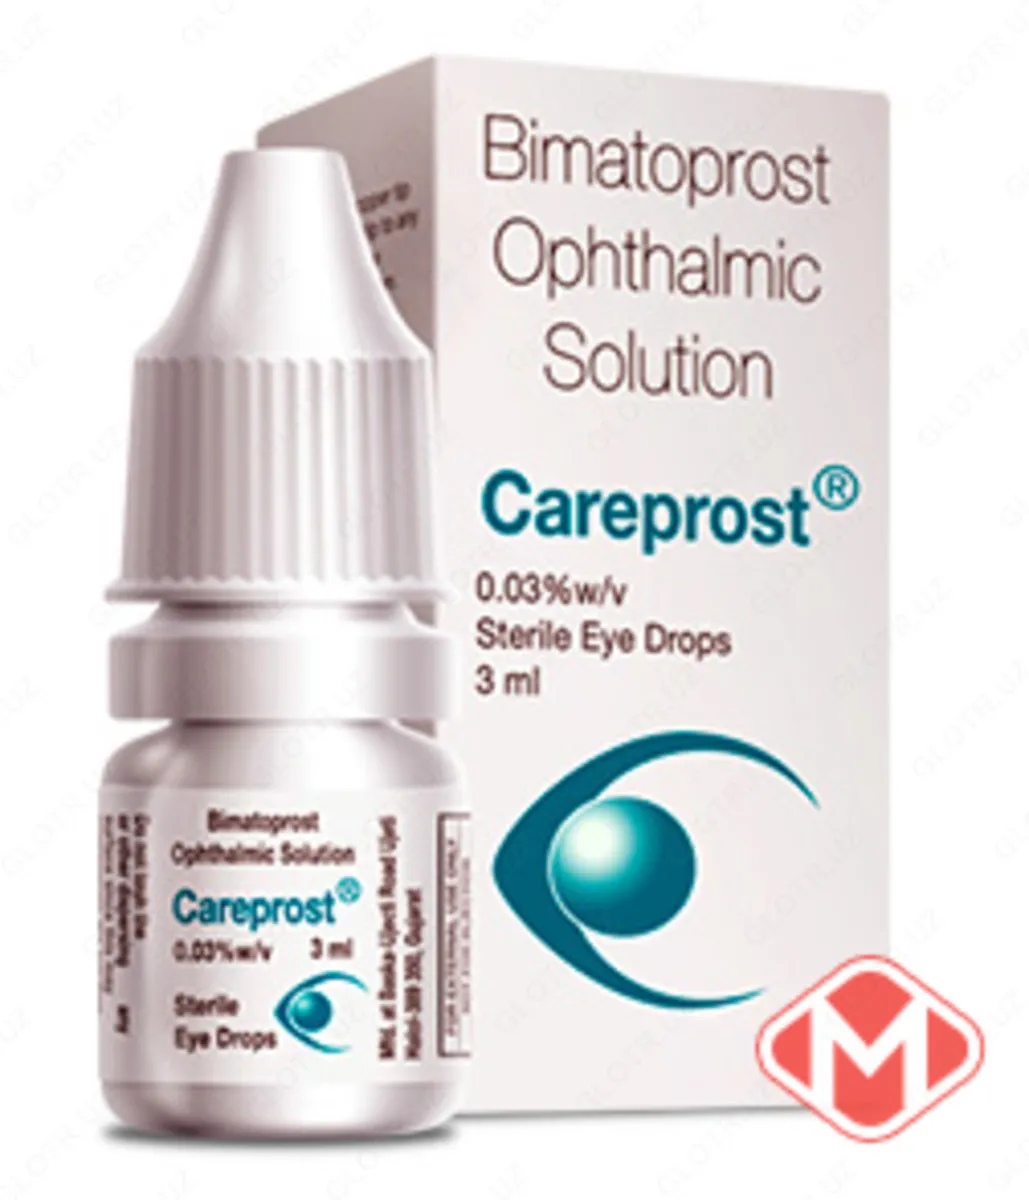 Kirpiklarni ostirish uchun vositalar Careprost (Kareprost) Bimatoprost oftalmik eritma#1